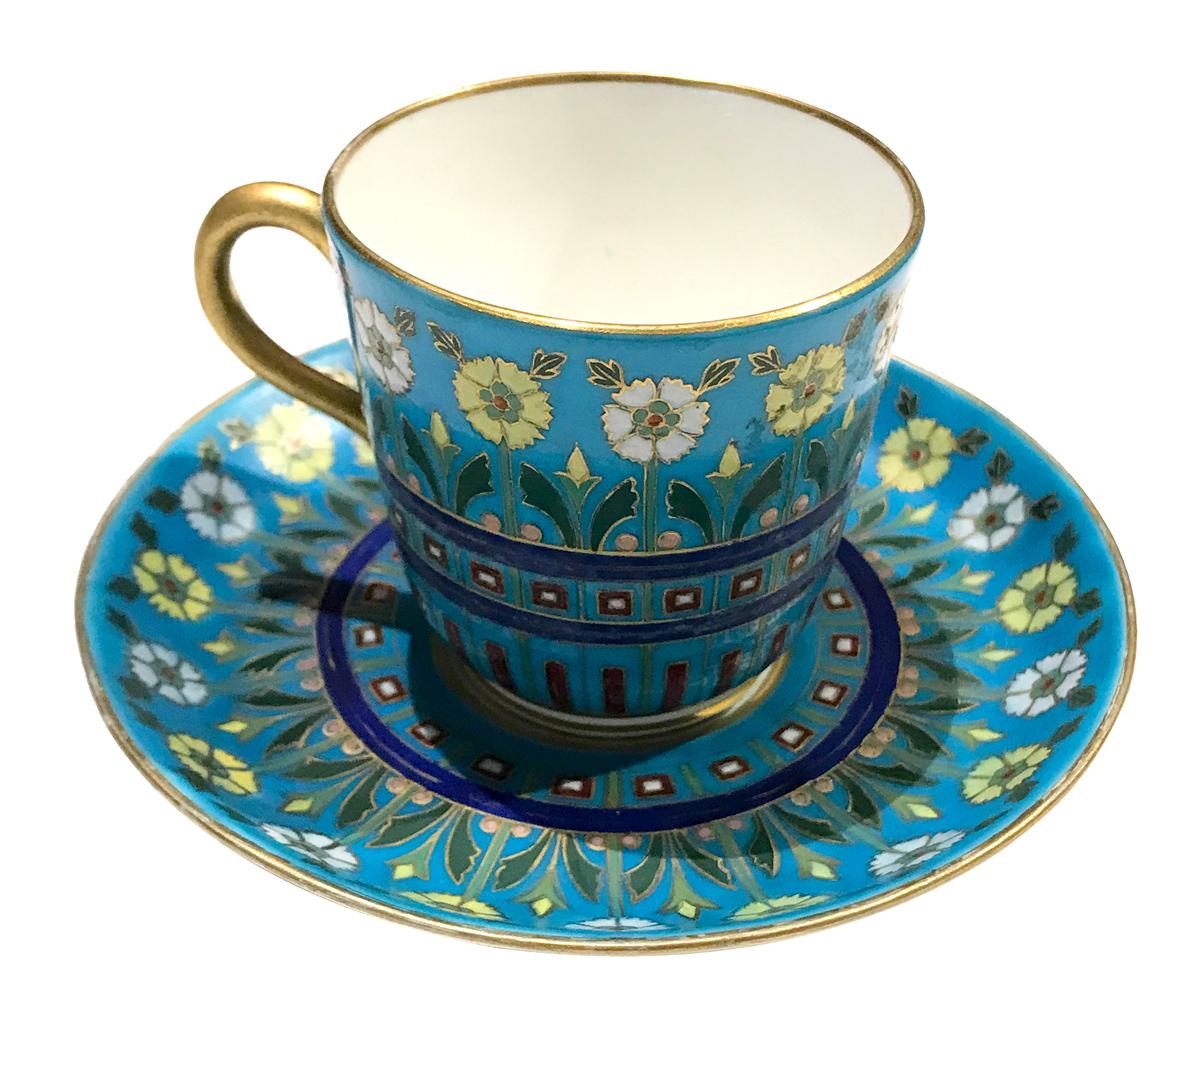 Exquisite Minton Cloisonné-Stil ware Teetasse mit Untertasse. Dieses Porzellanset ist mit der Cloisonné-Technik verziert und zeigt lebhafte botanische Muster, die mit Gold umrahmt sind. Hier sind schöne Friese von Pfingstrosen oder Gänseblümchen auf